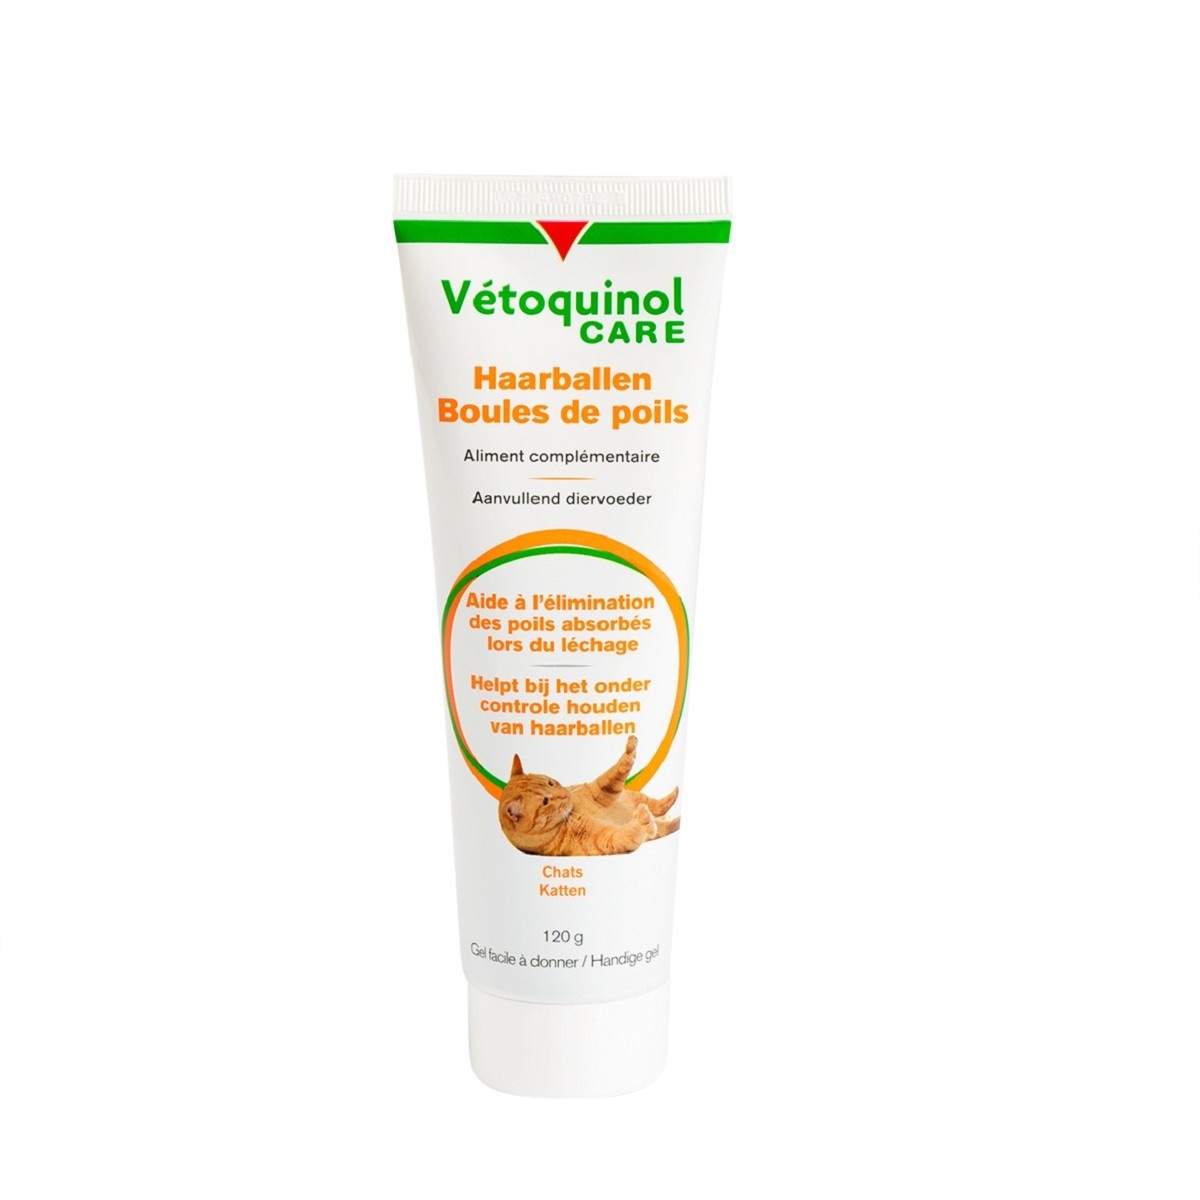 Vetoquinol Care - Haarballen